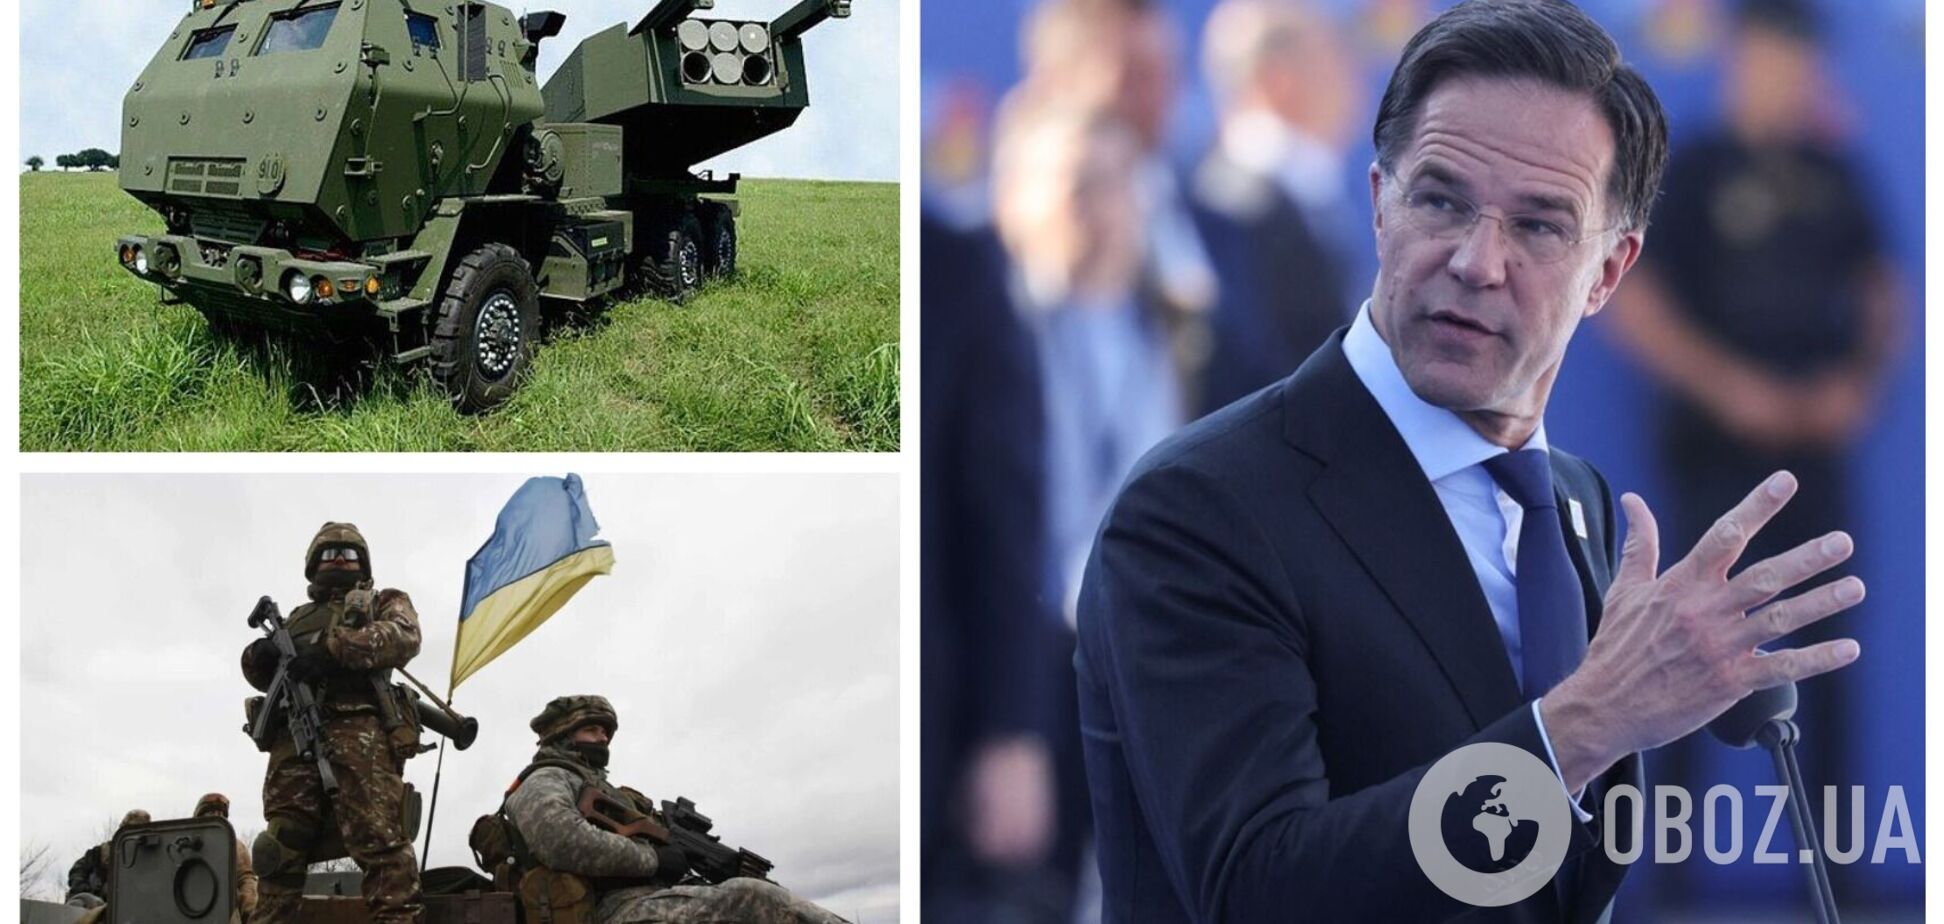 Захід має відправити Україні більше зброї, – прем'єр-міністр Нідерландів